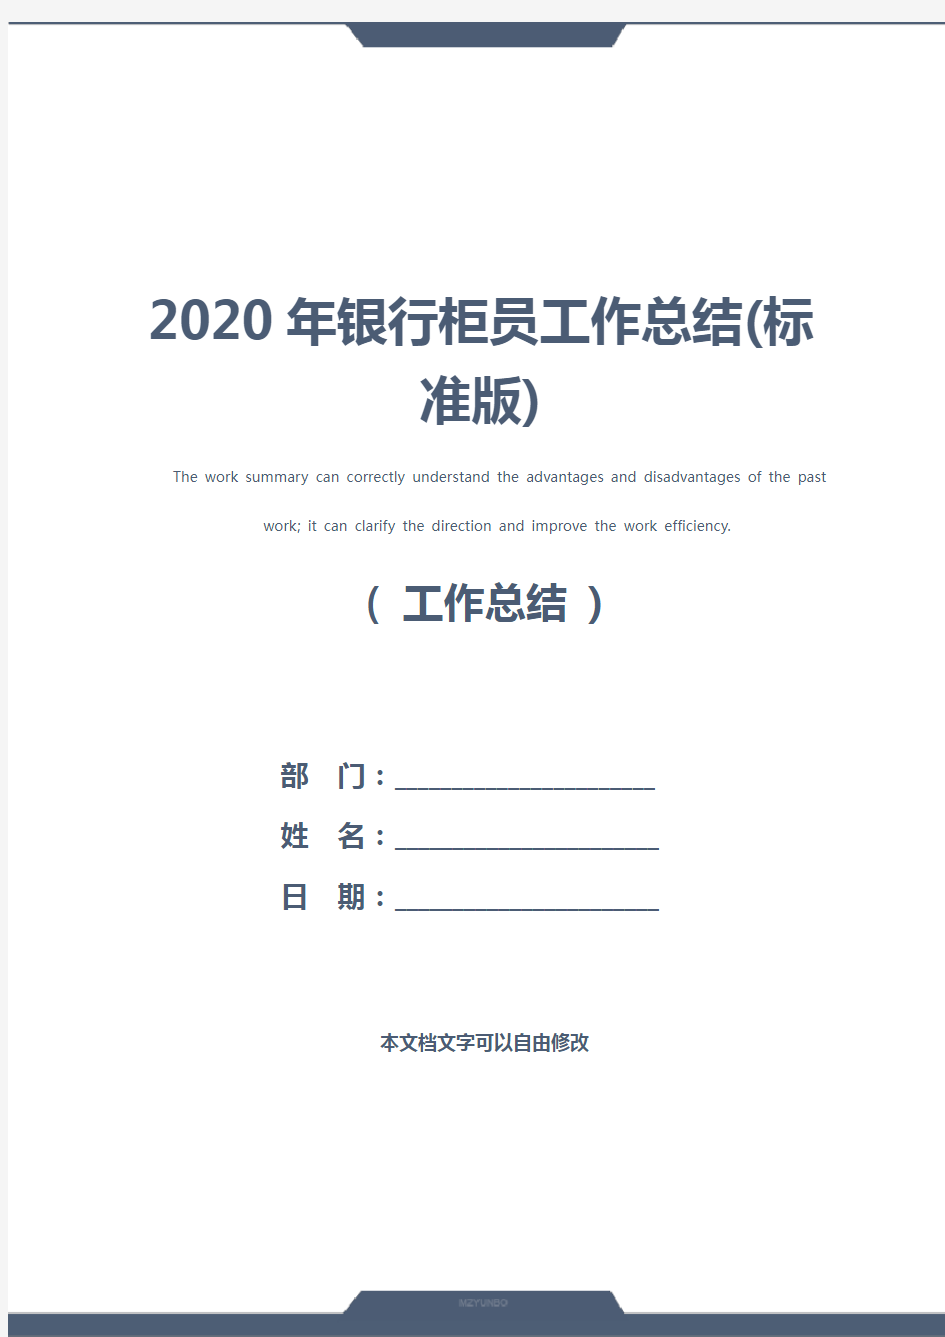 2020年银行柜员工作总结(标准版)